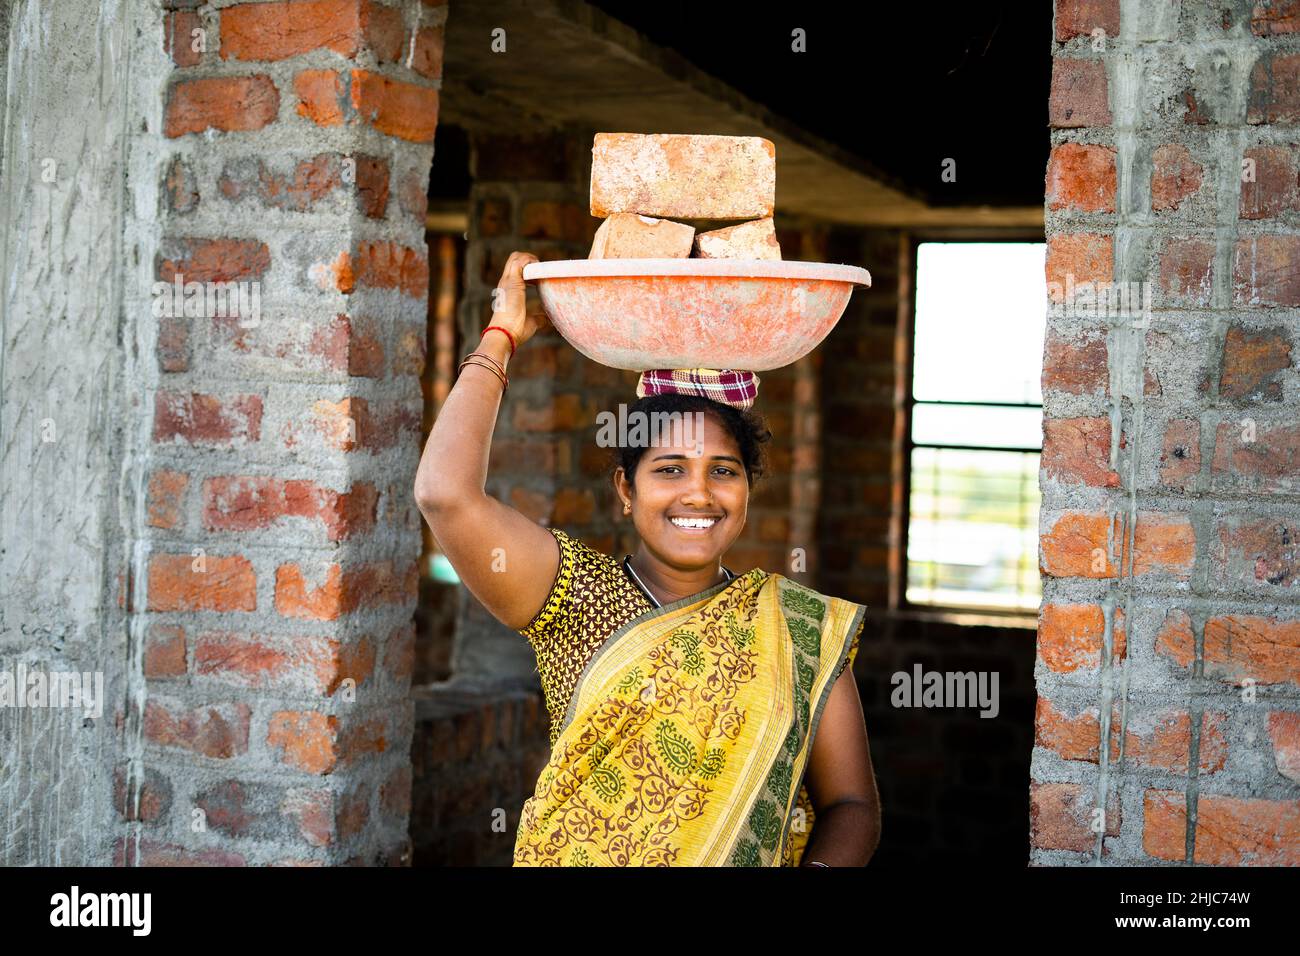 Fleißige, indisch lächelnde Frauen mit Ziegelsteinen auf dem Kopf, die die Kamera betrachten – Konzept des täglichen Wetteinsätzen, positiver emotionaler und weiblicher Ermächtigung. Stockfoto